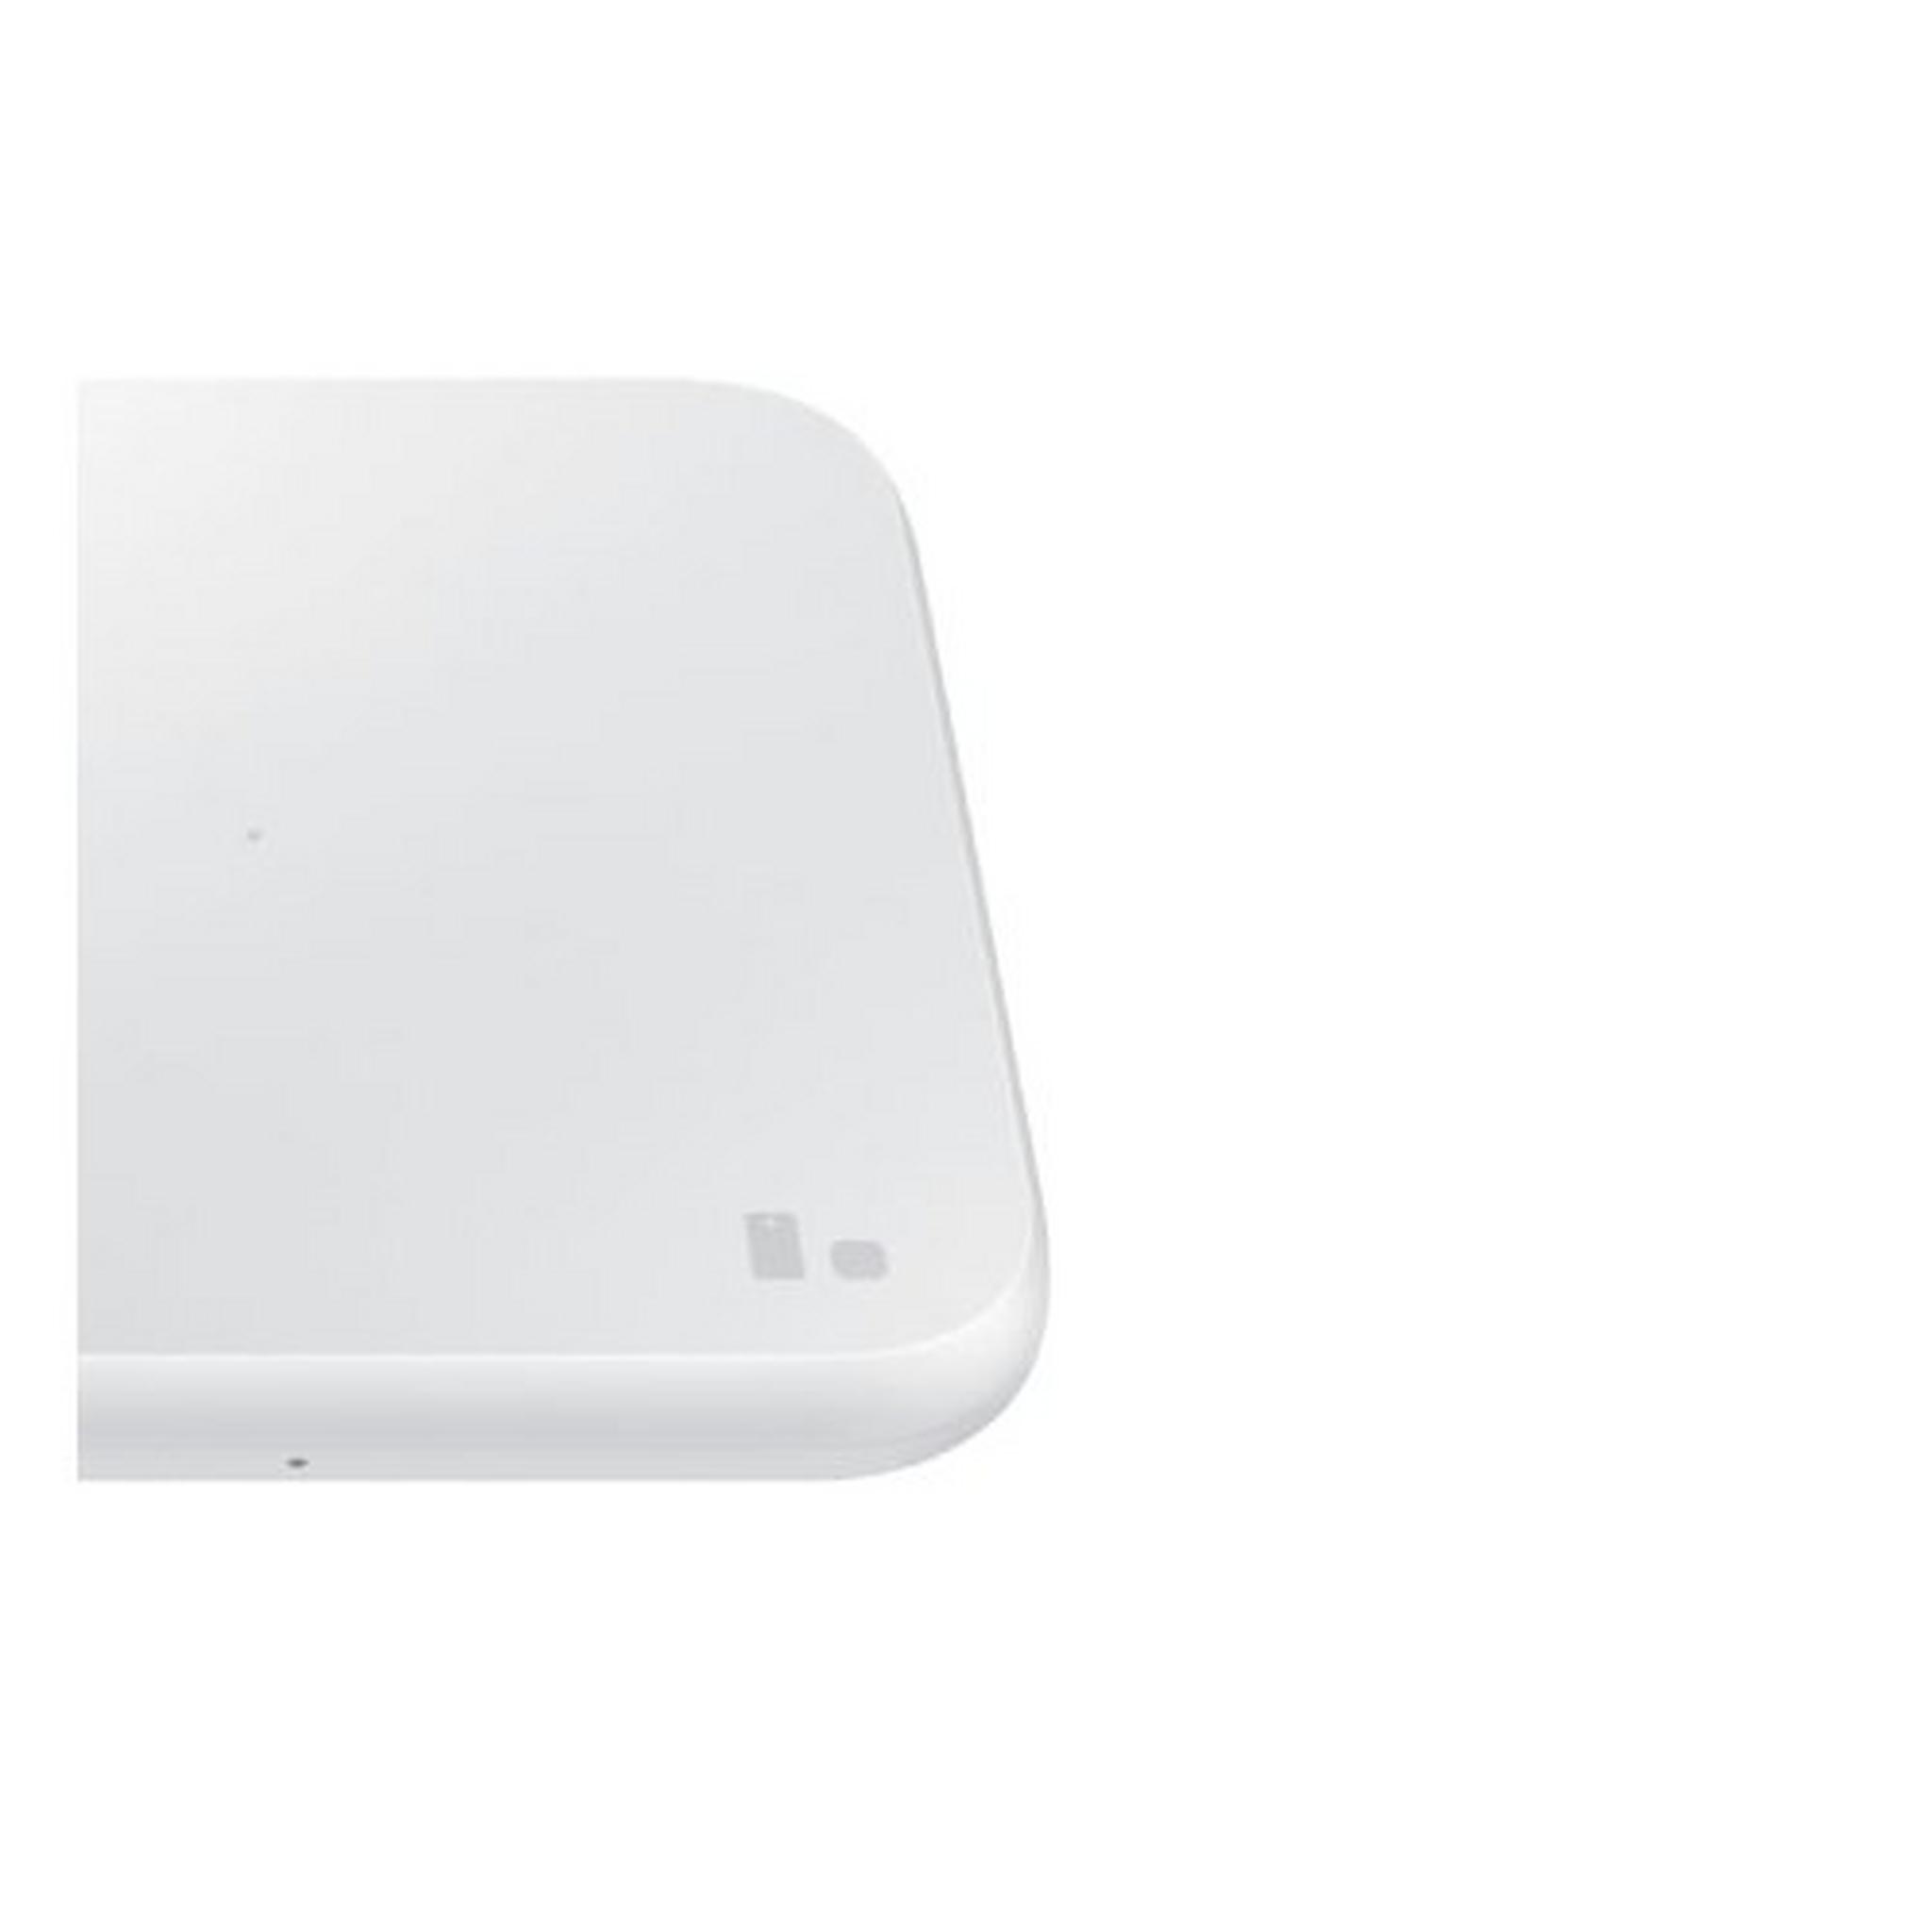 Samsung Wireless Charging Pad - Travel Adaptor 2021 - White